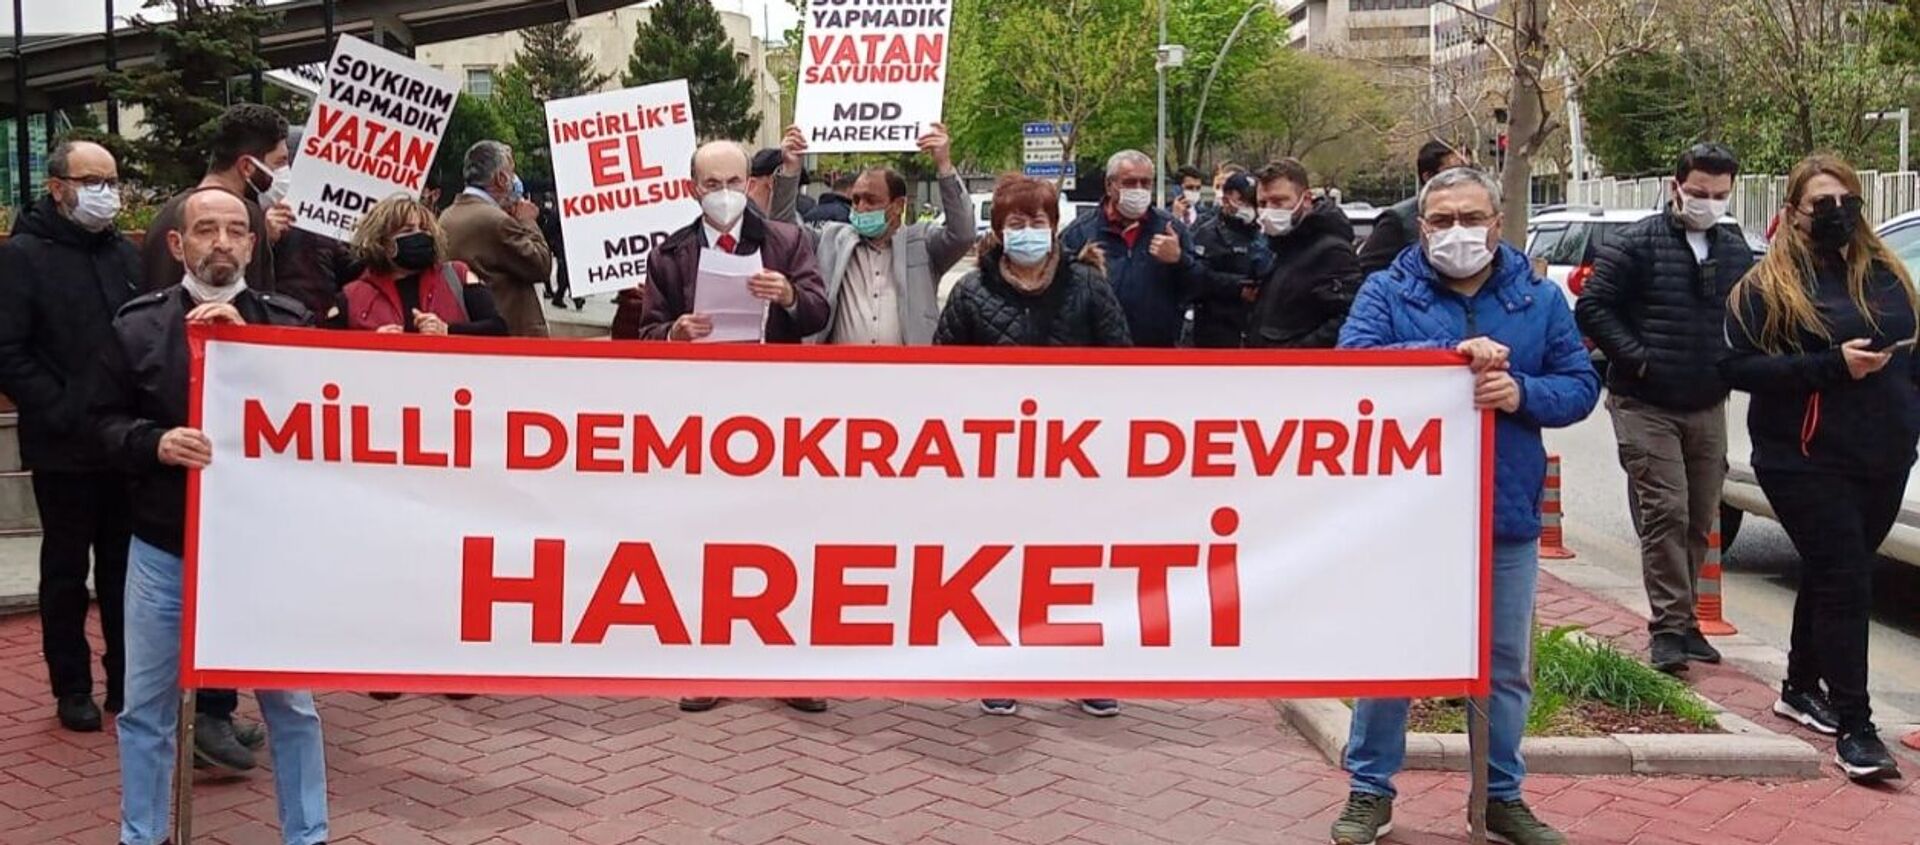 MDD Hareketi, Biden'ın 'soykırım' açıklamasını protesto etti - Sputnik Türkiye, 1920, 26.04.2021